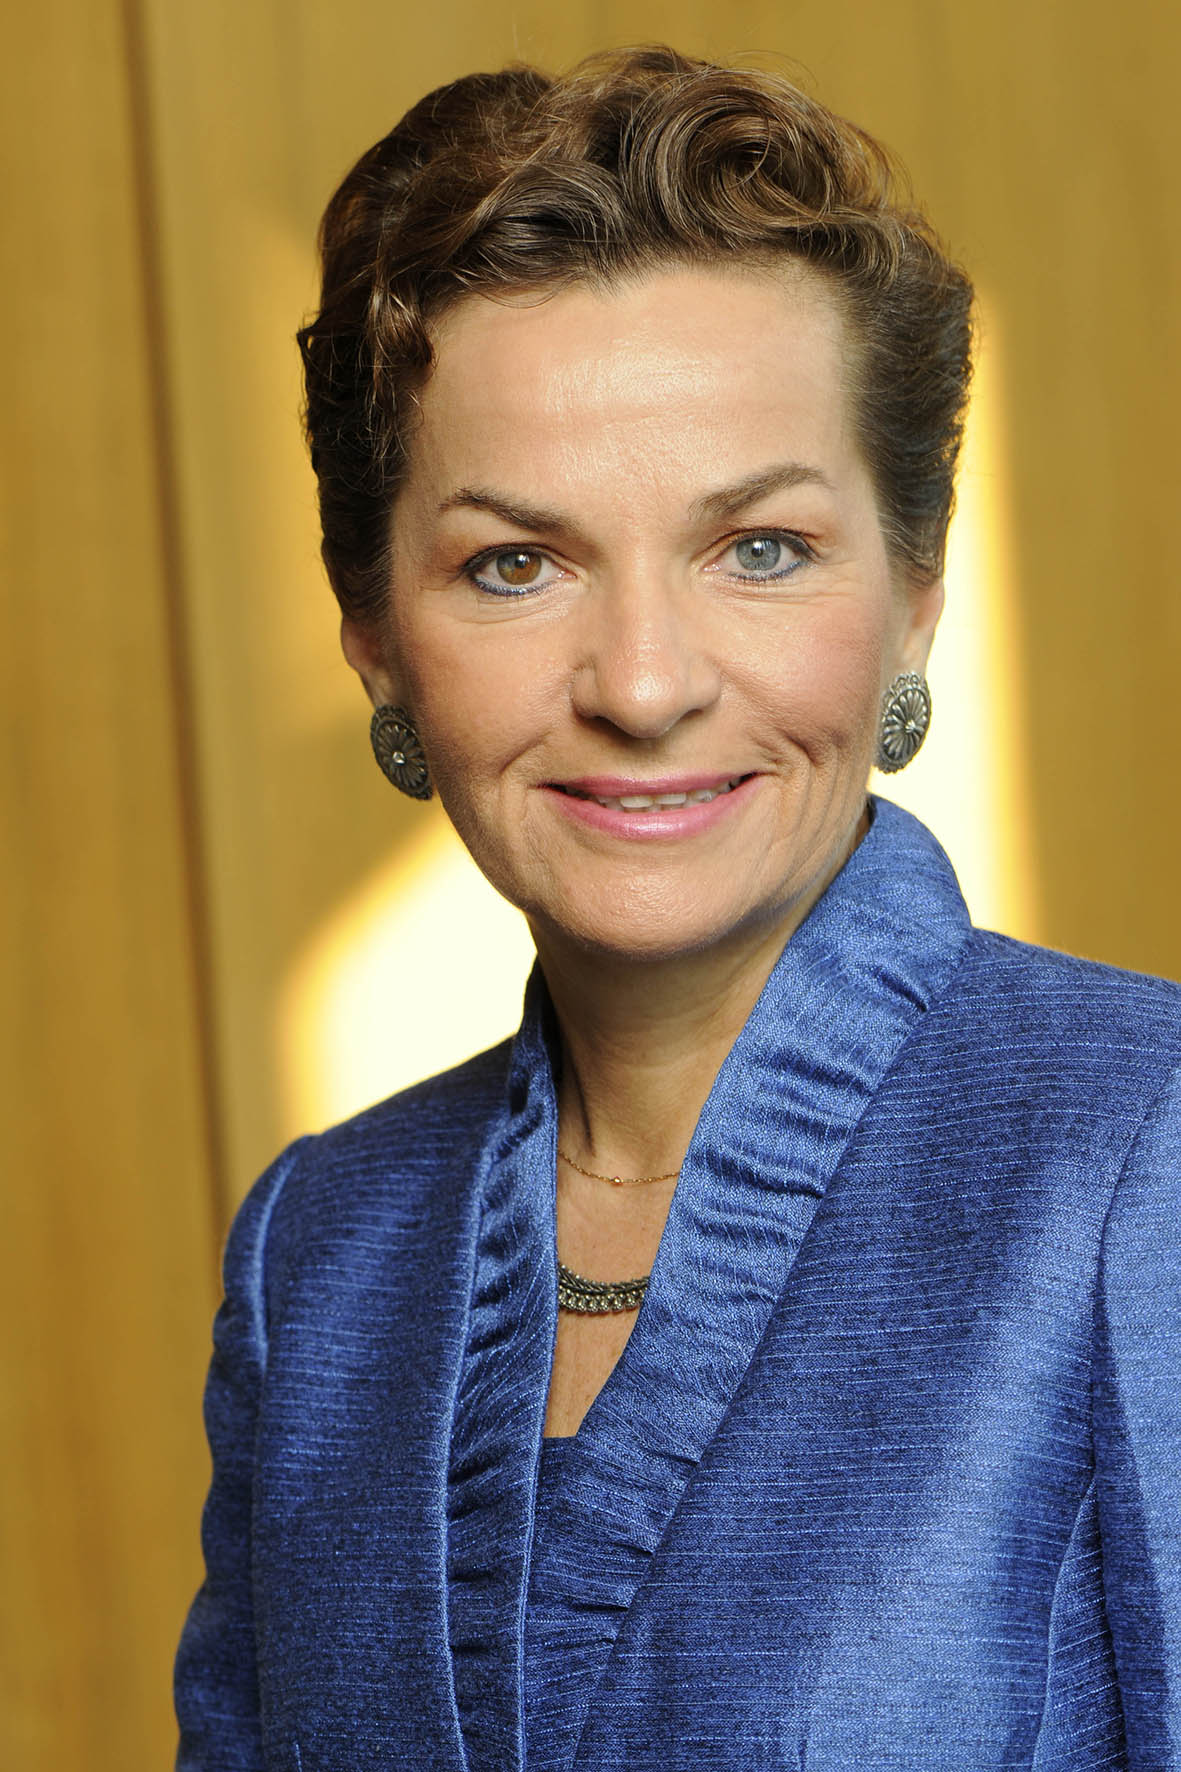 Christiana Figueres – Nữ tướng của cuộc chiến chống biến đổi khí hậu